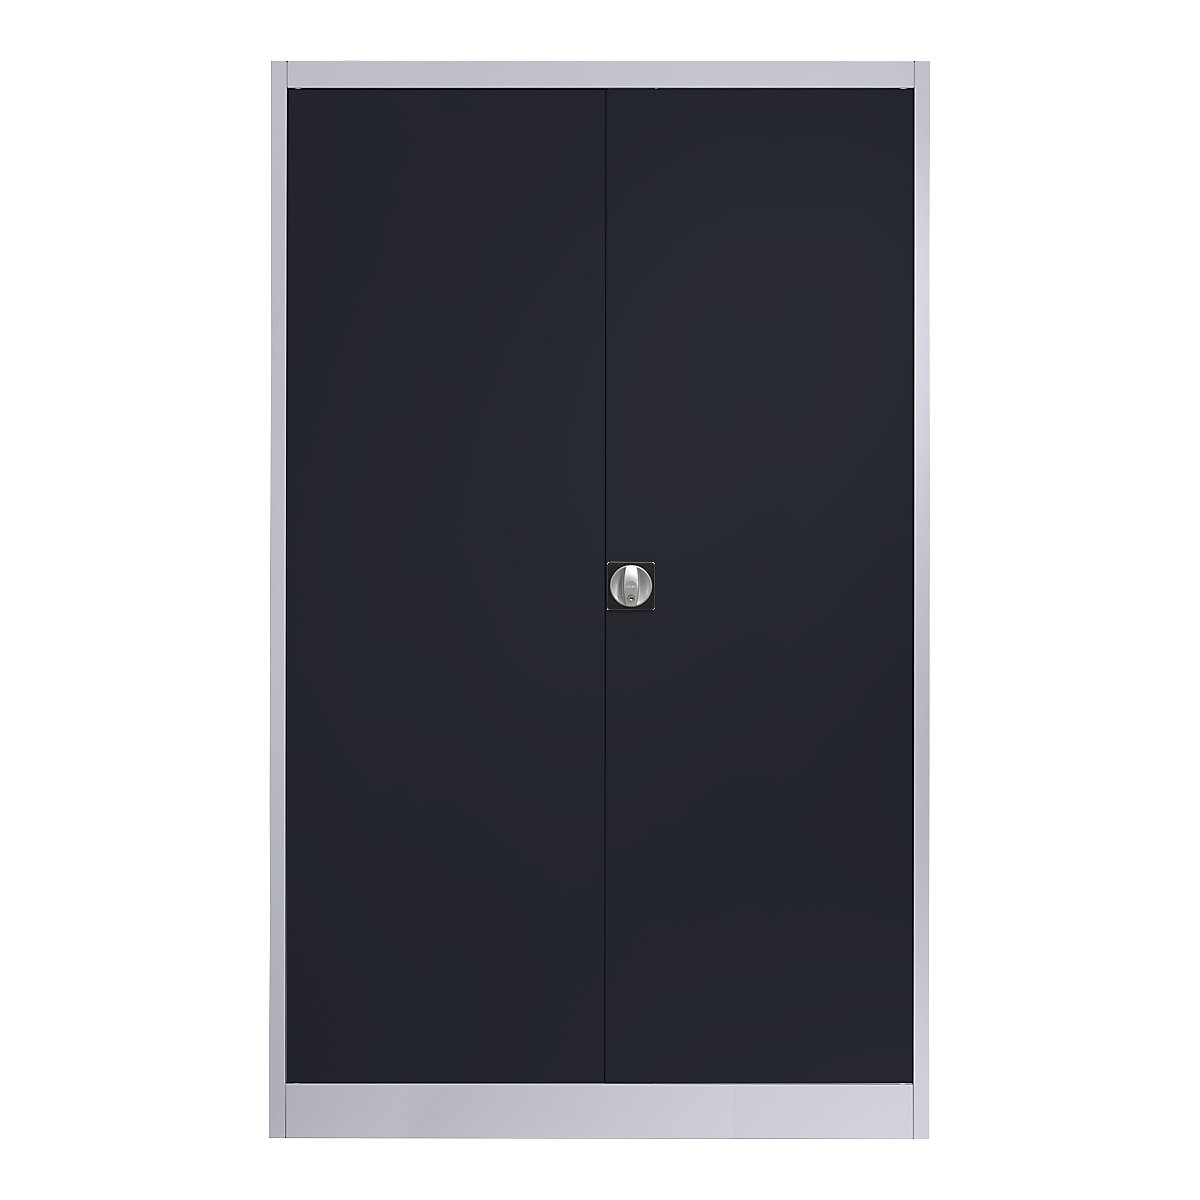 Szárnyas-ajtós acélszekrény – mauser, 4 polc, szélesség 1200 mm, fehéralumínium / antracitszürke, külső mélység 420 mm-6